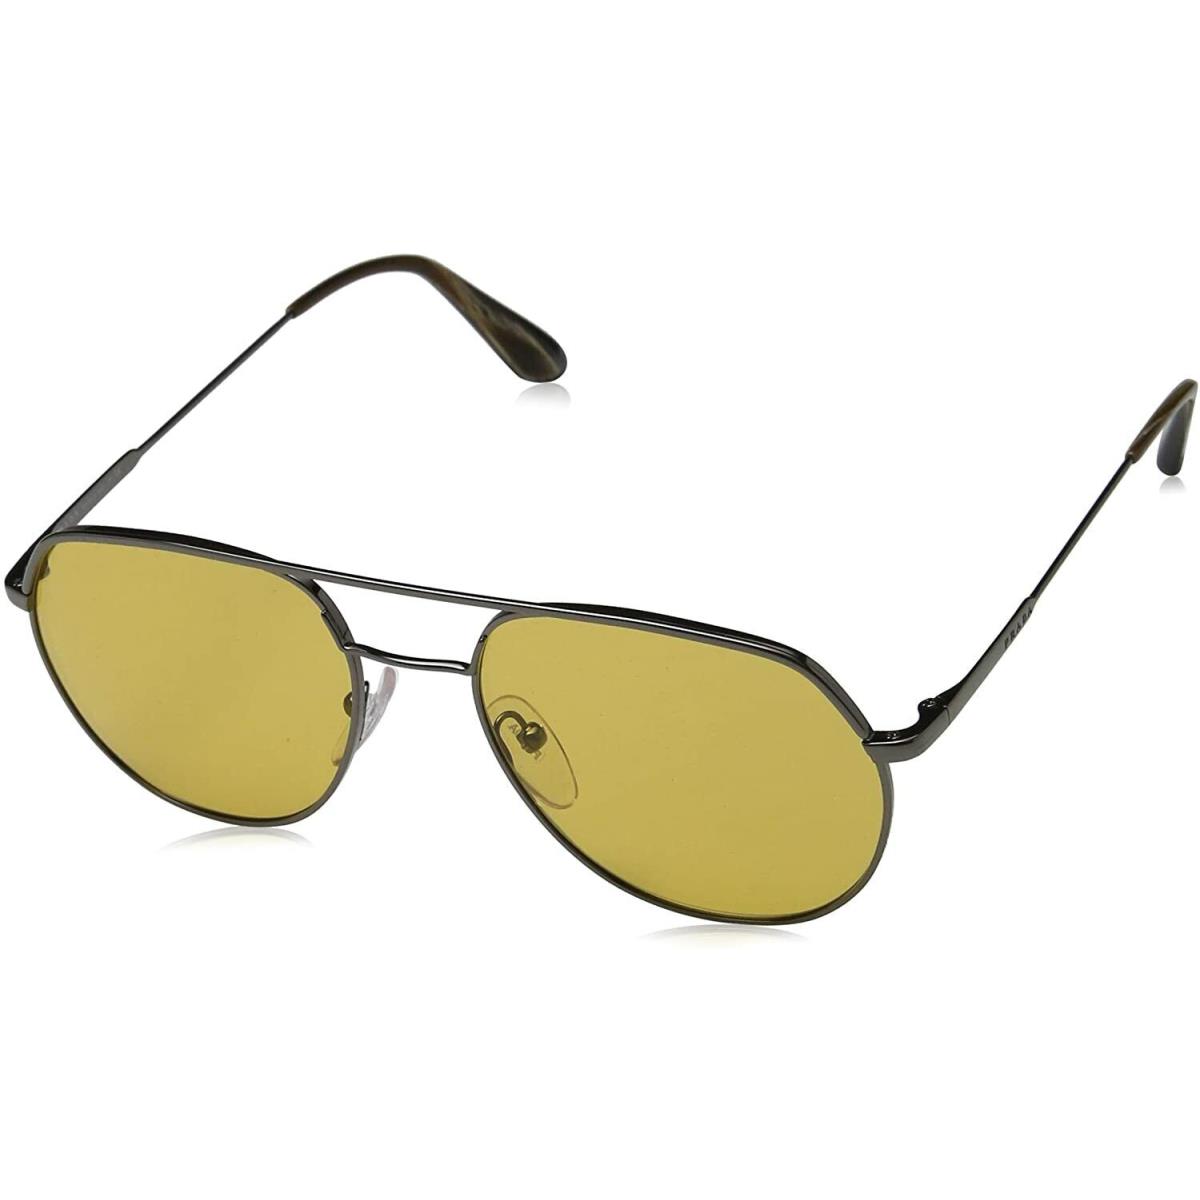 Prada Sunglasses 0PR 55US 5AV0B7 54-18-140 Gunmetal Aviator Eyeglasses - Frame: Black, Lens: Yellow